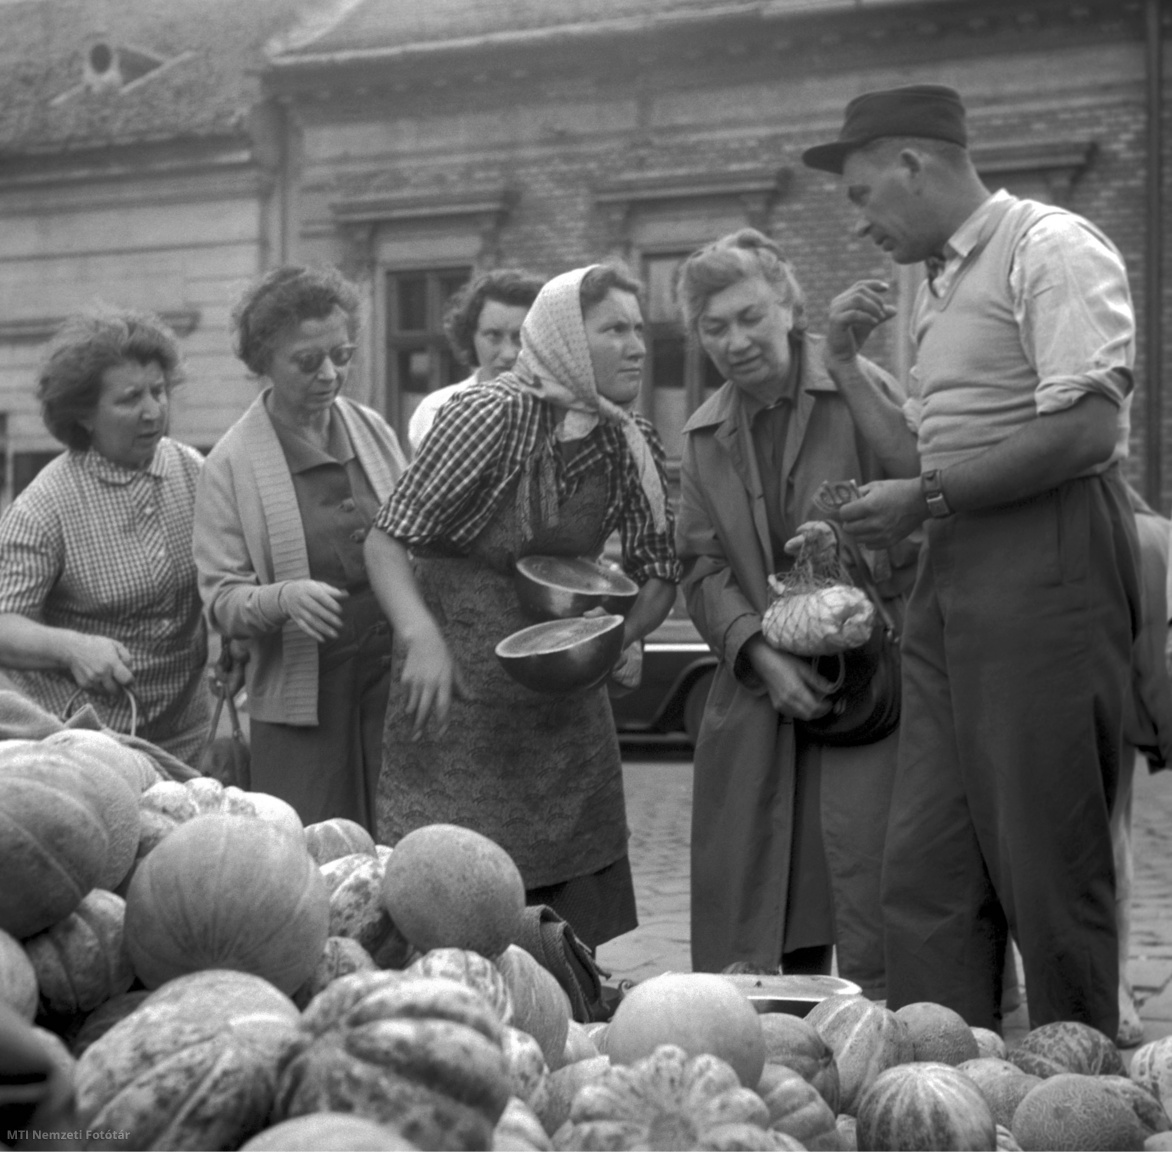 Βουδαπέστη, 1 Σεπτεμβρίου 1959. Ένας άντρας αγοράζει πεπόνια από έναν από τους πάγκους της αγοράς στην οδό Fény, ενώ άλλοι πελάτες κοιτάζουν την επιλογή φρούτων από τον πωλητή